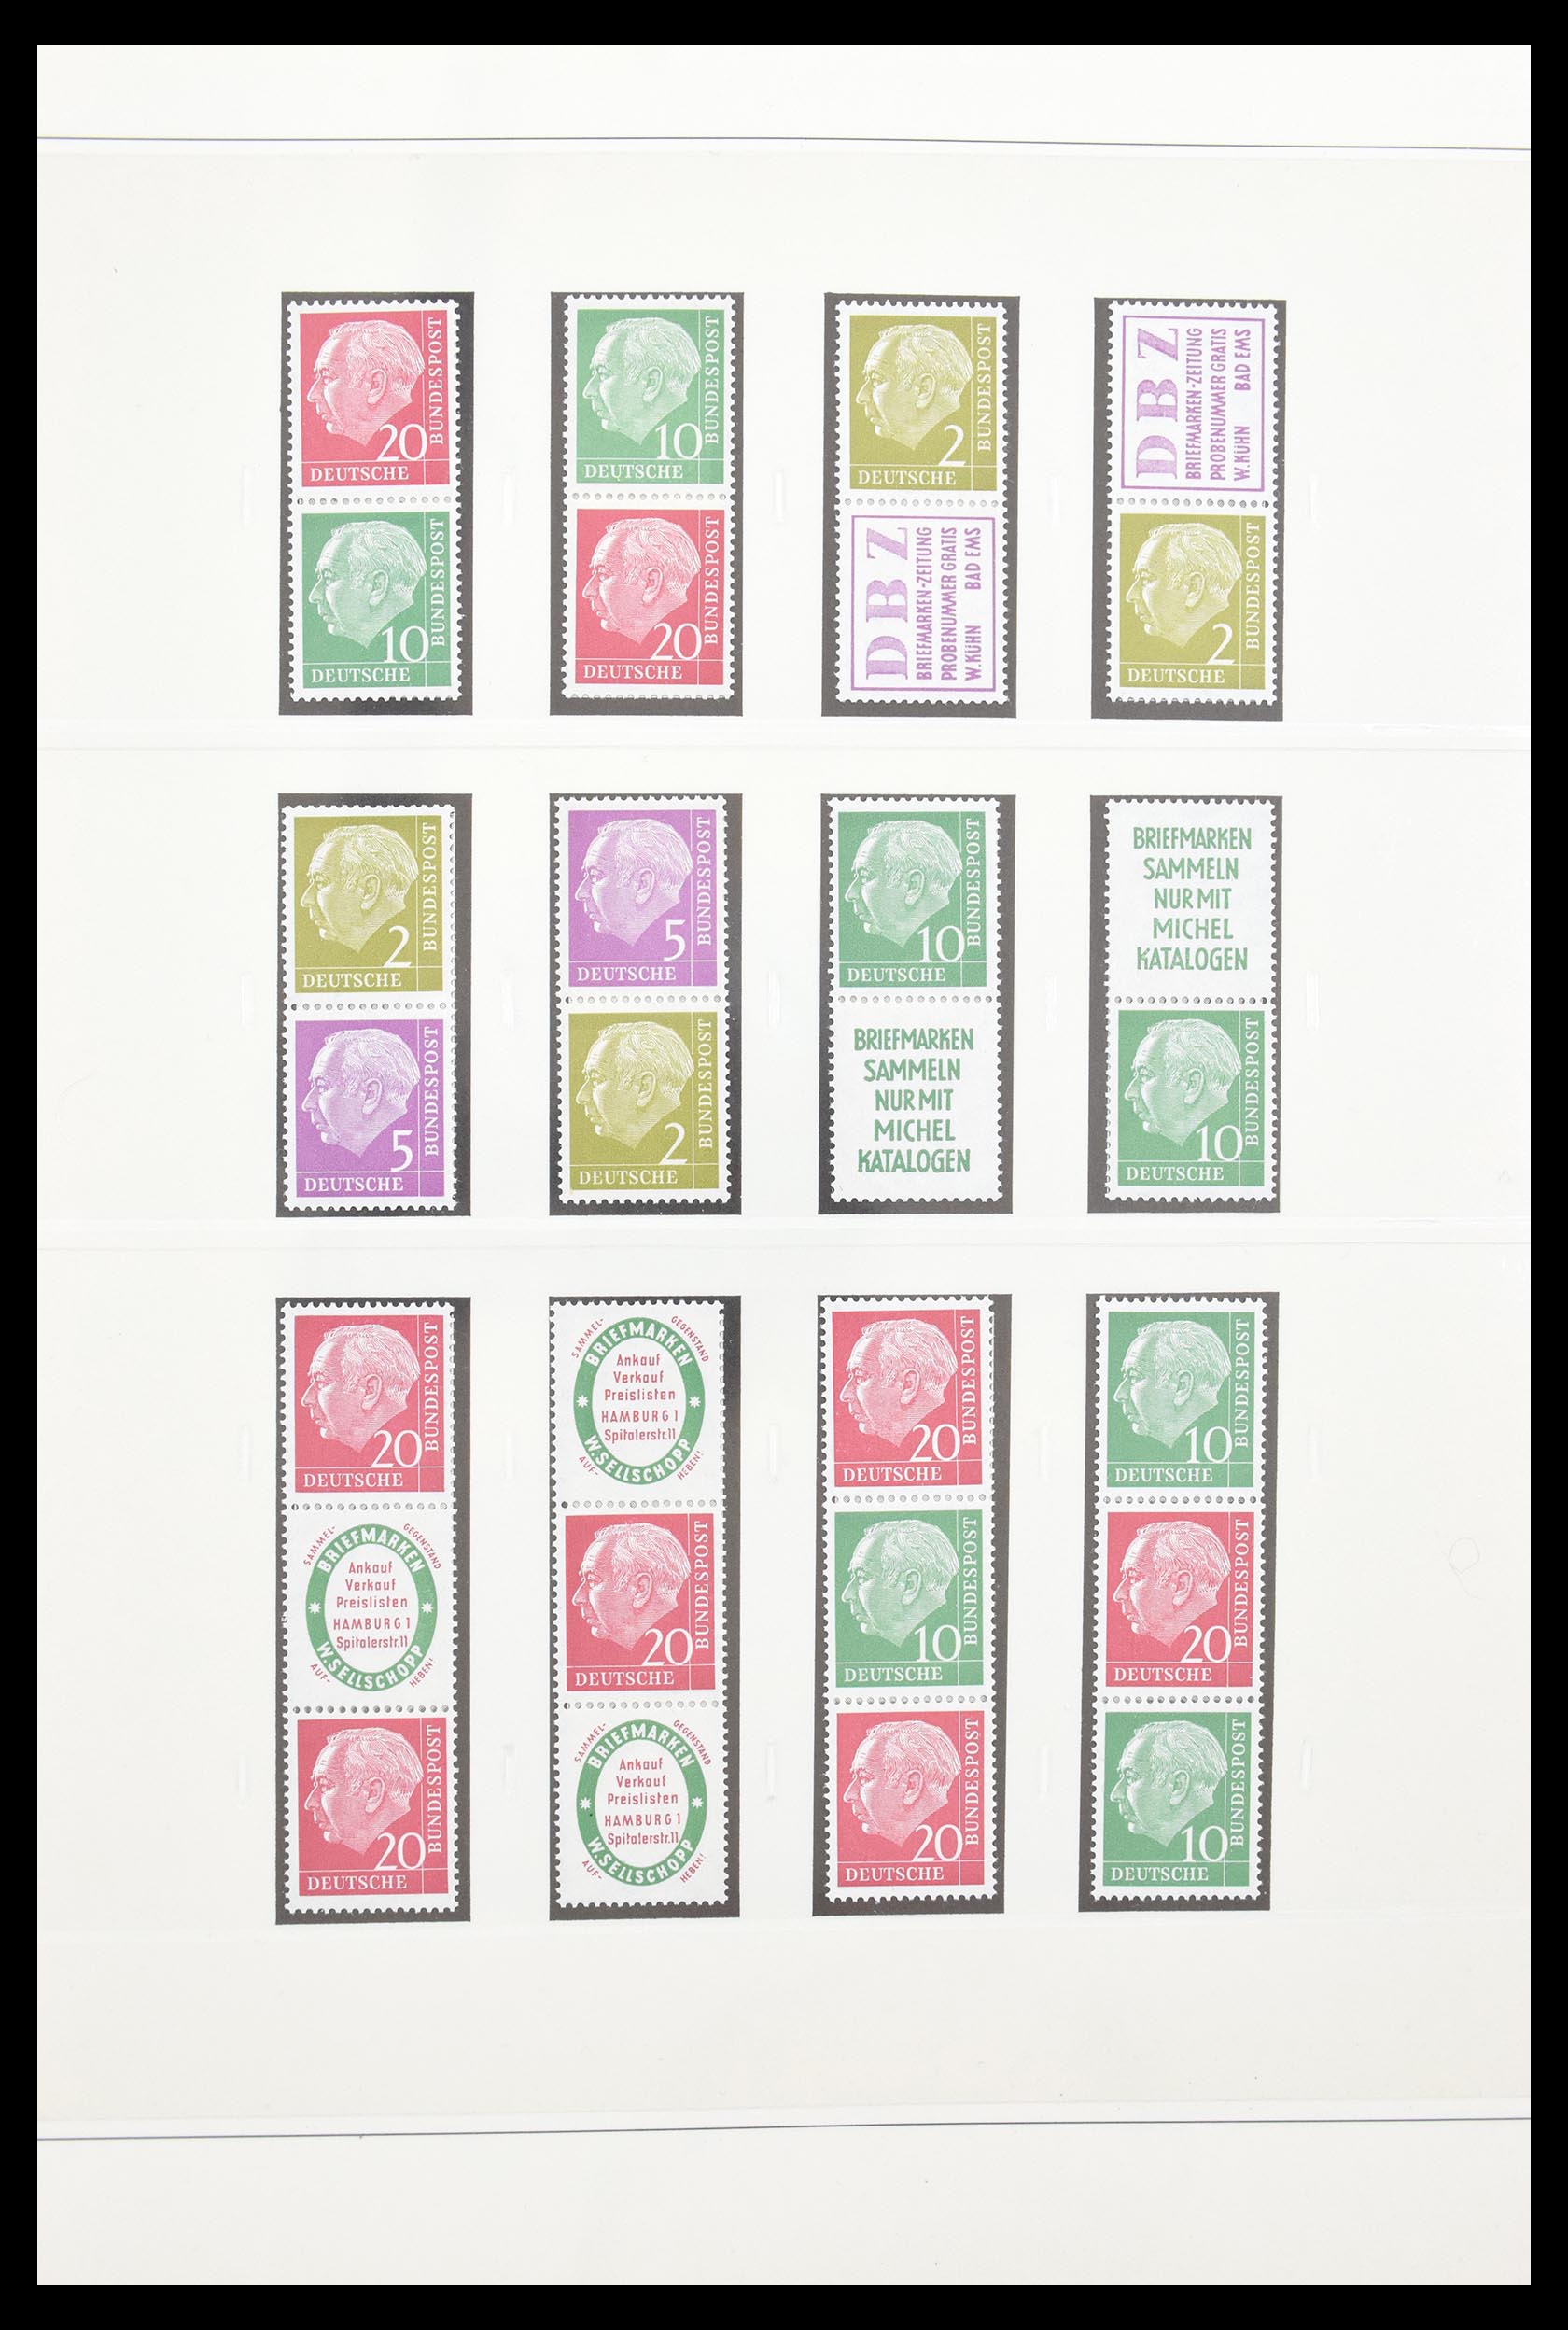 30605 005 - 30605 Bundespost combinations 1951-1974.